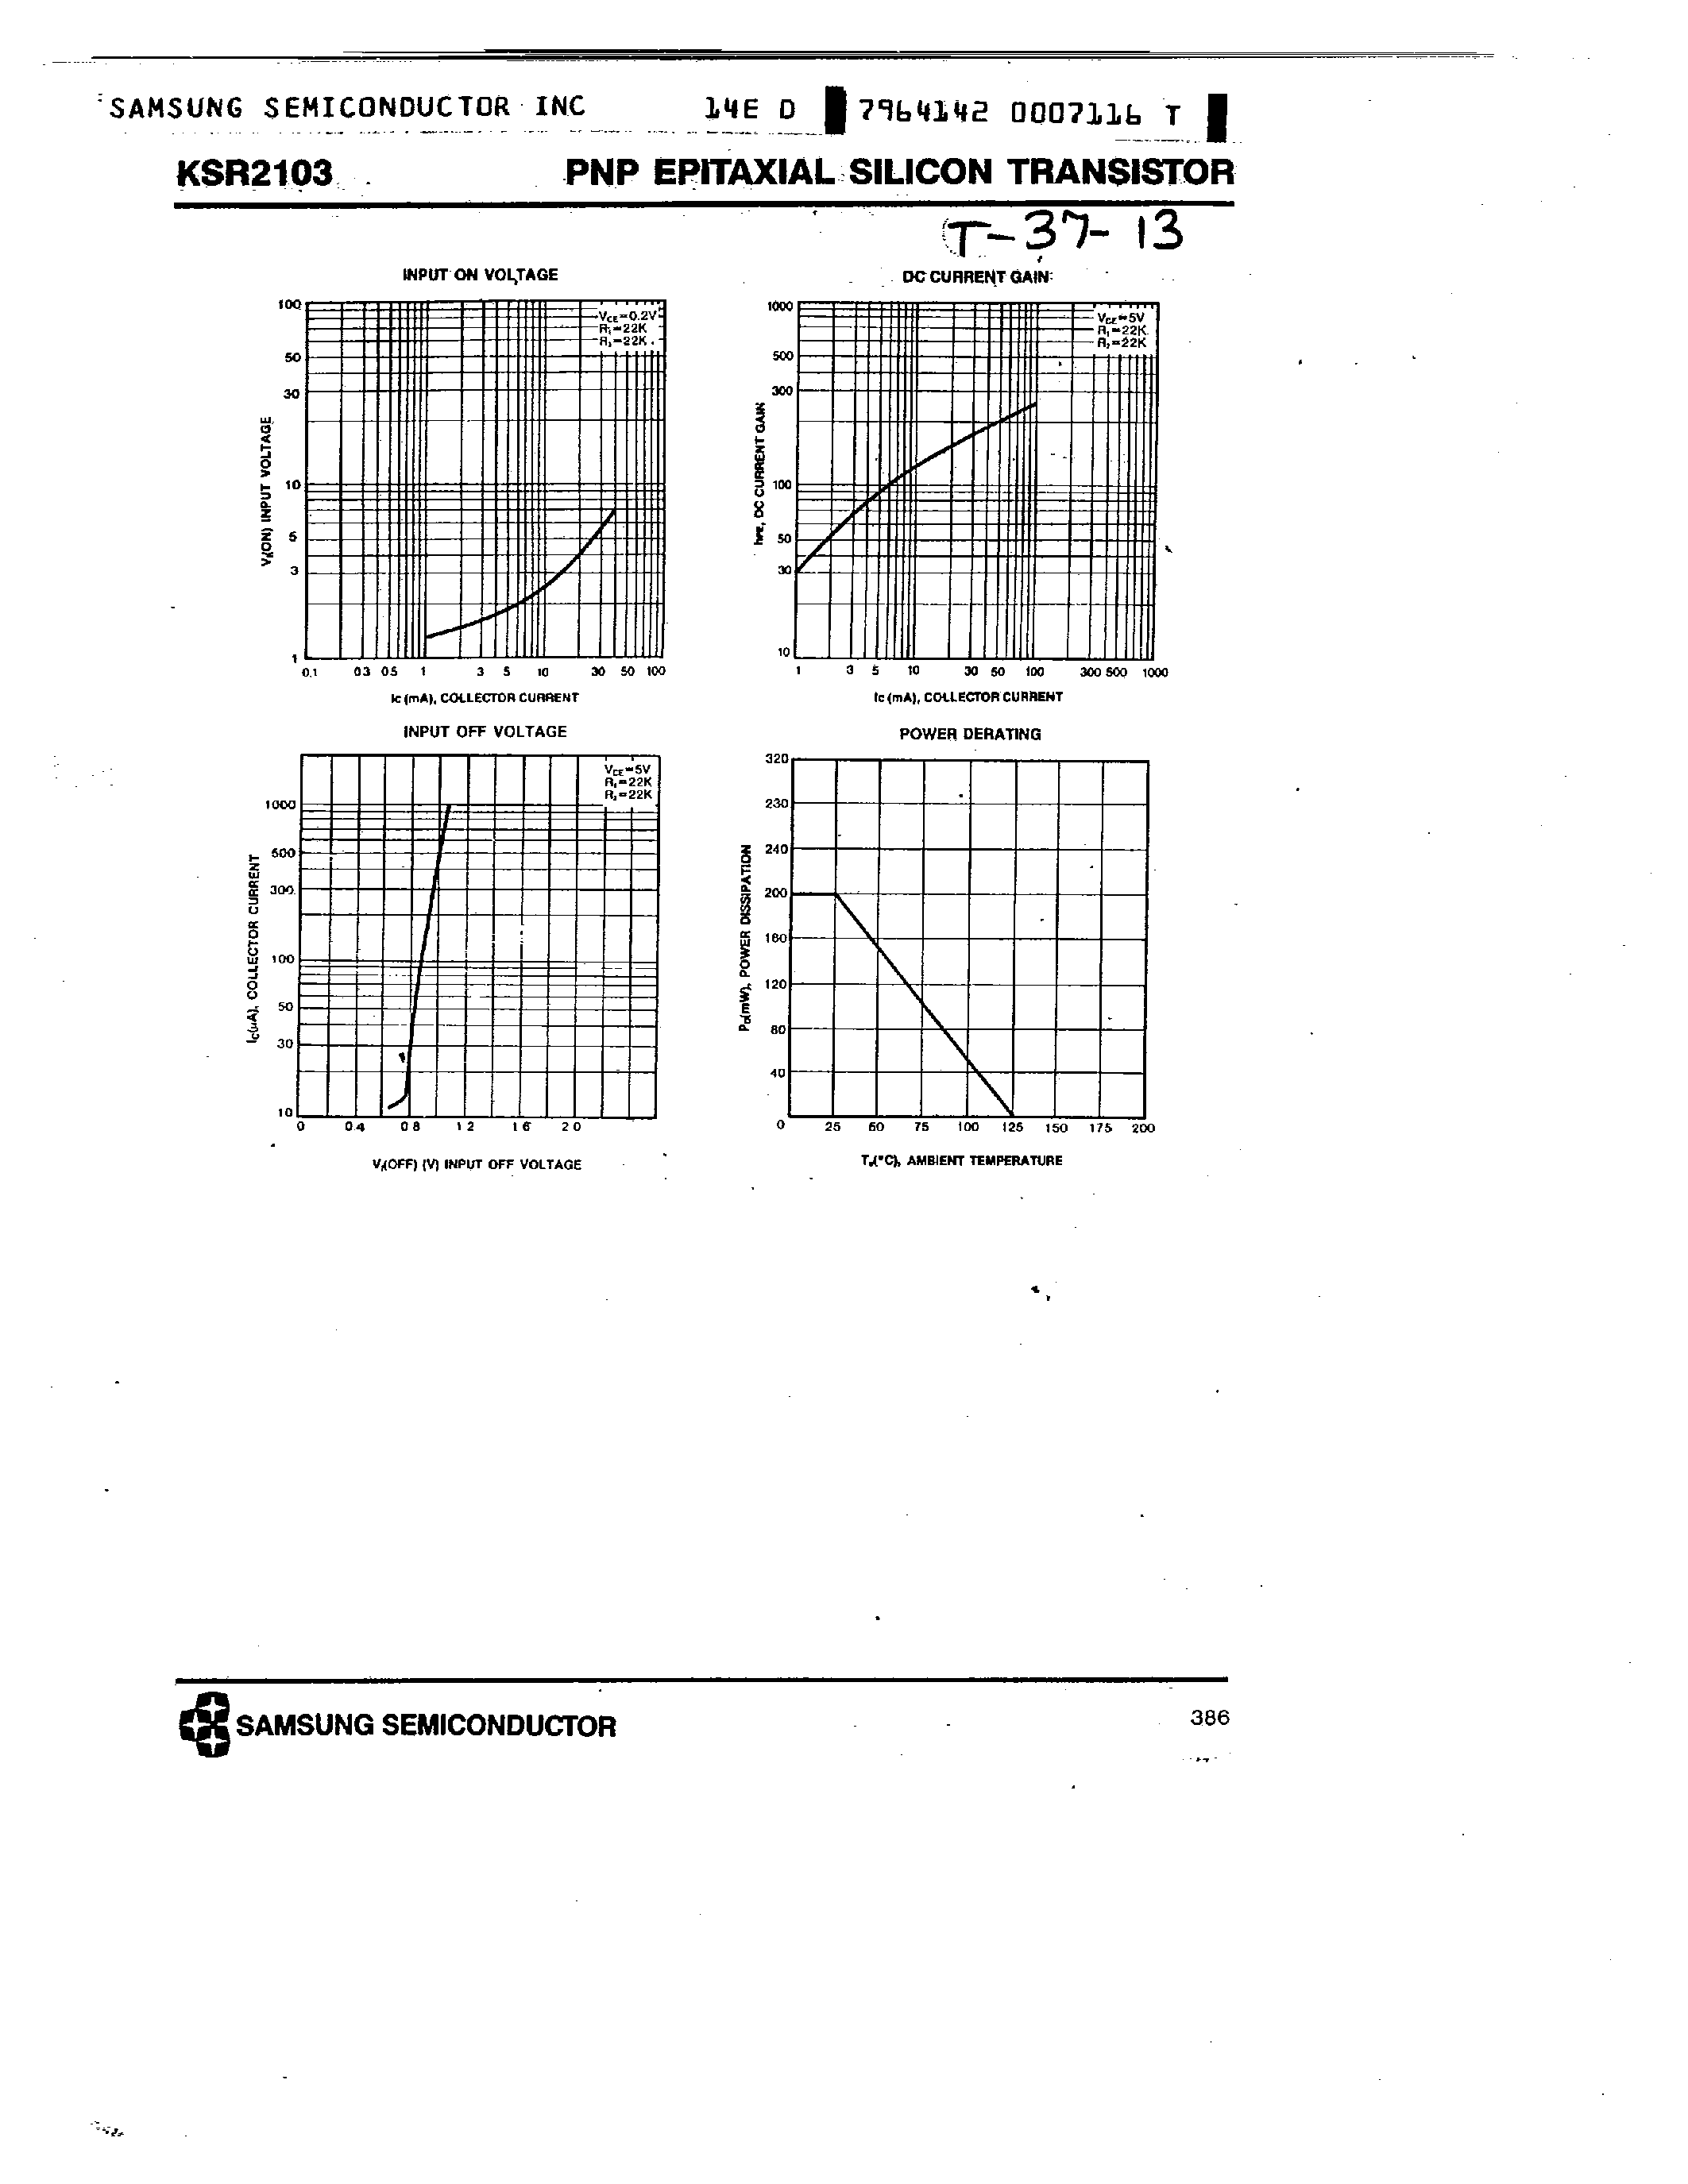 Datasheet KSR2103 - PNP (SWITCHING APPLICATION) page 2